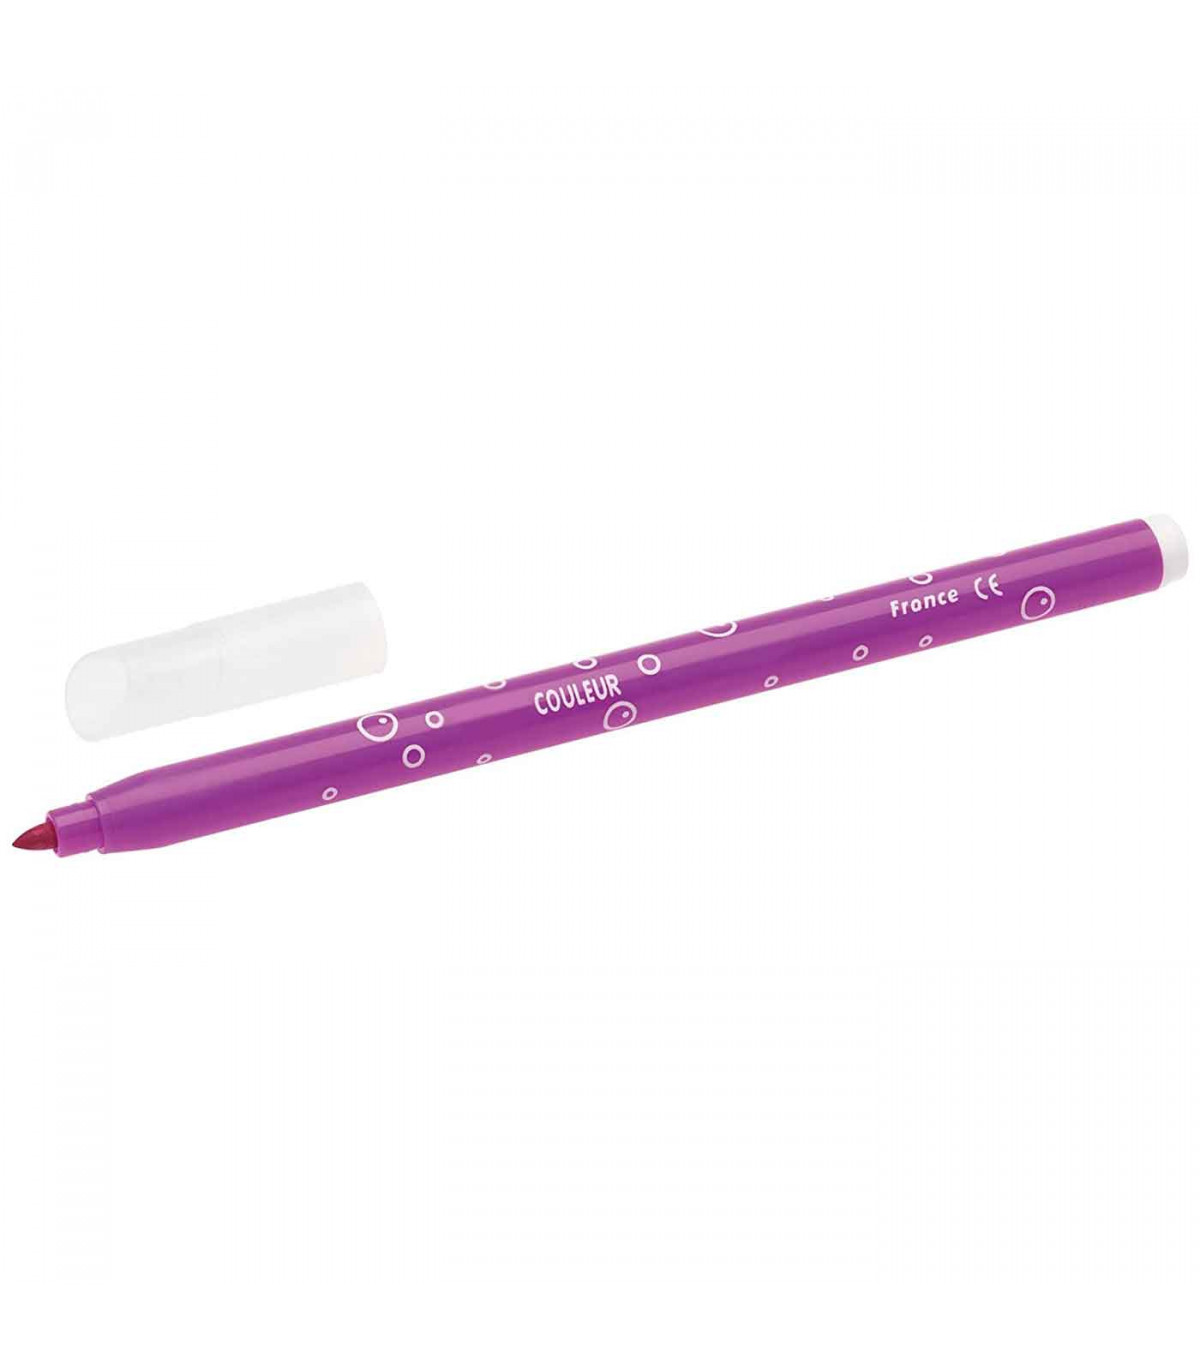   Basics - Rotuladores de tinta fluorescente con punta  biselada, colores surtidos, paquete de 12 unidades : Productos de Oficina